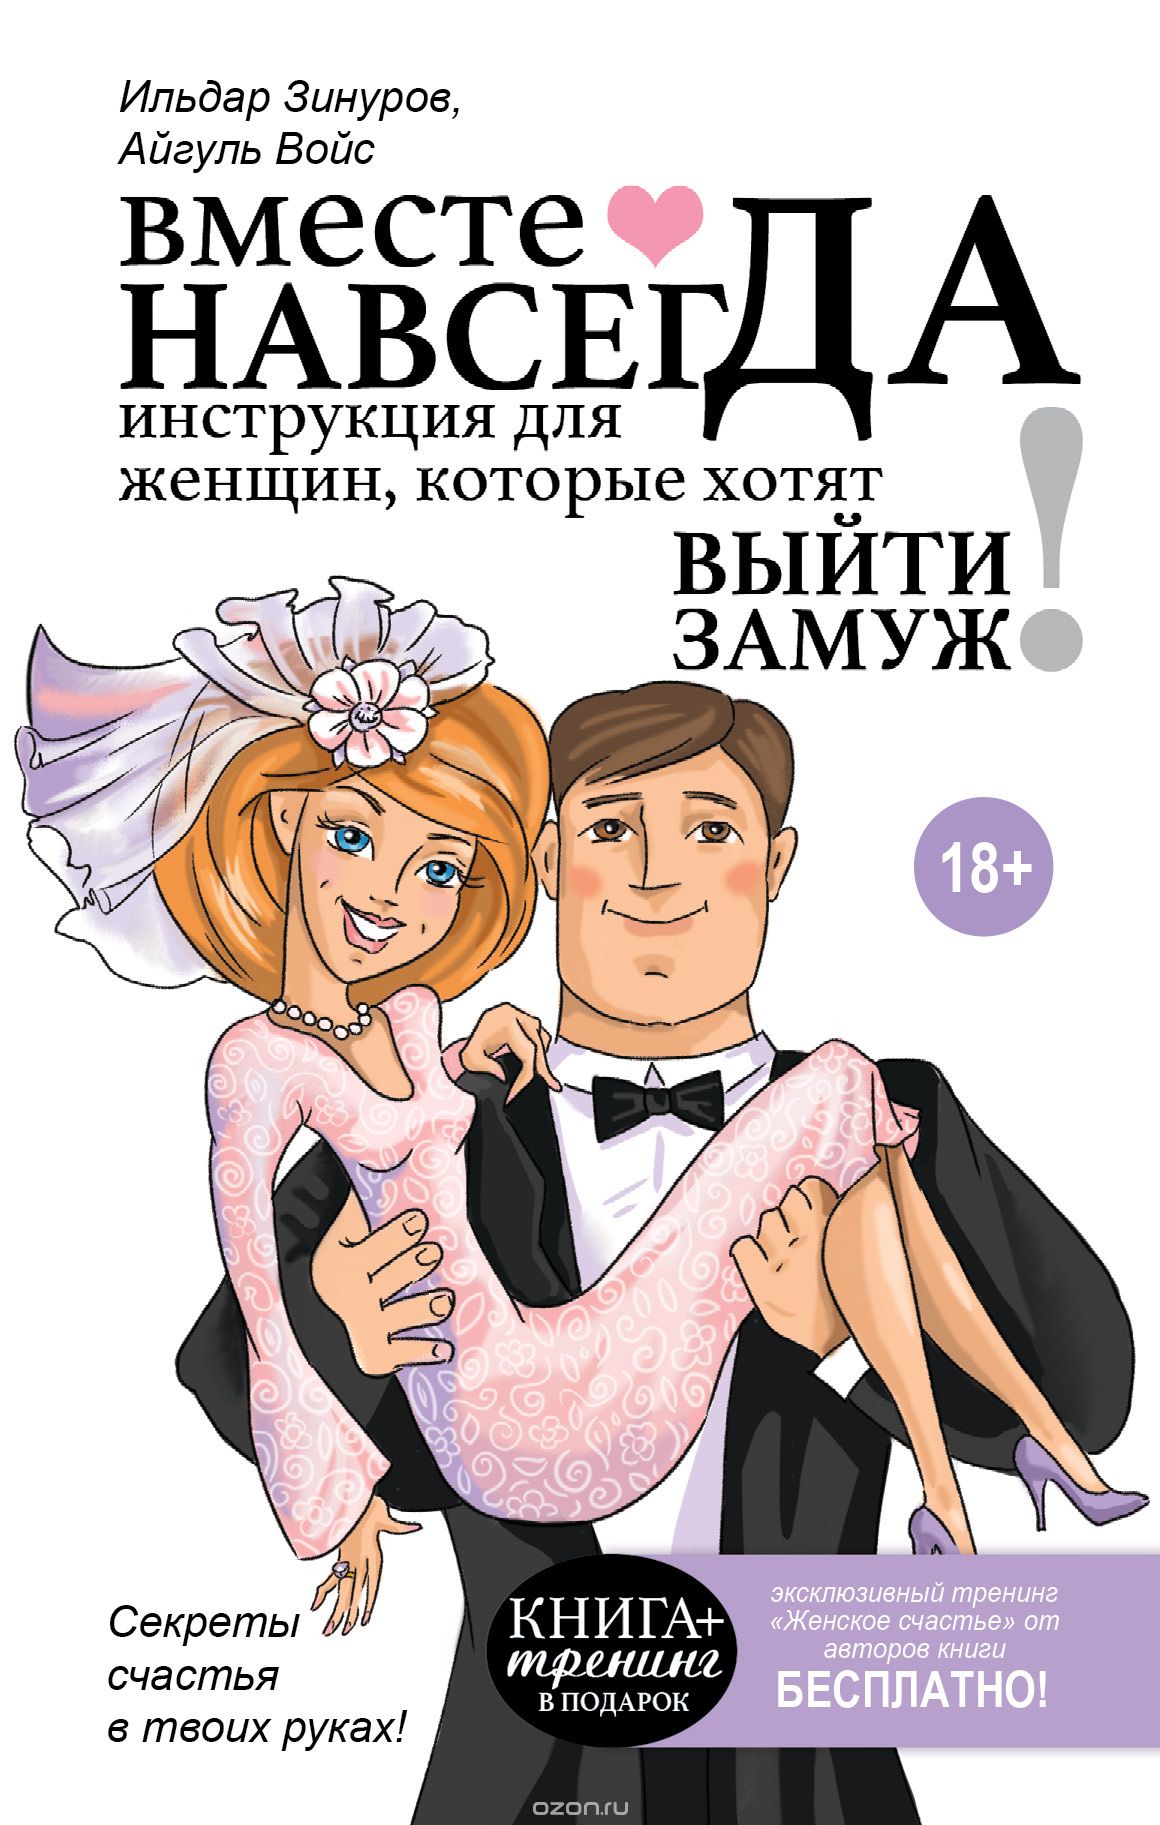 Скачать книгу "Вместе навсегда. Инструкция для женщин, которые хотят выйти замуж, Ильдар Зинуров, Айгуль Зинурова"